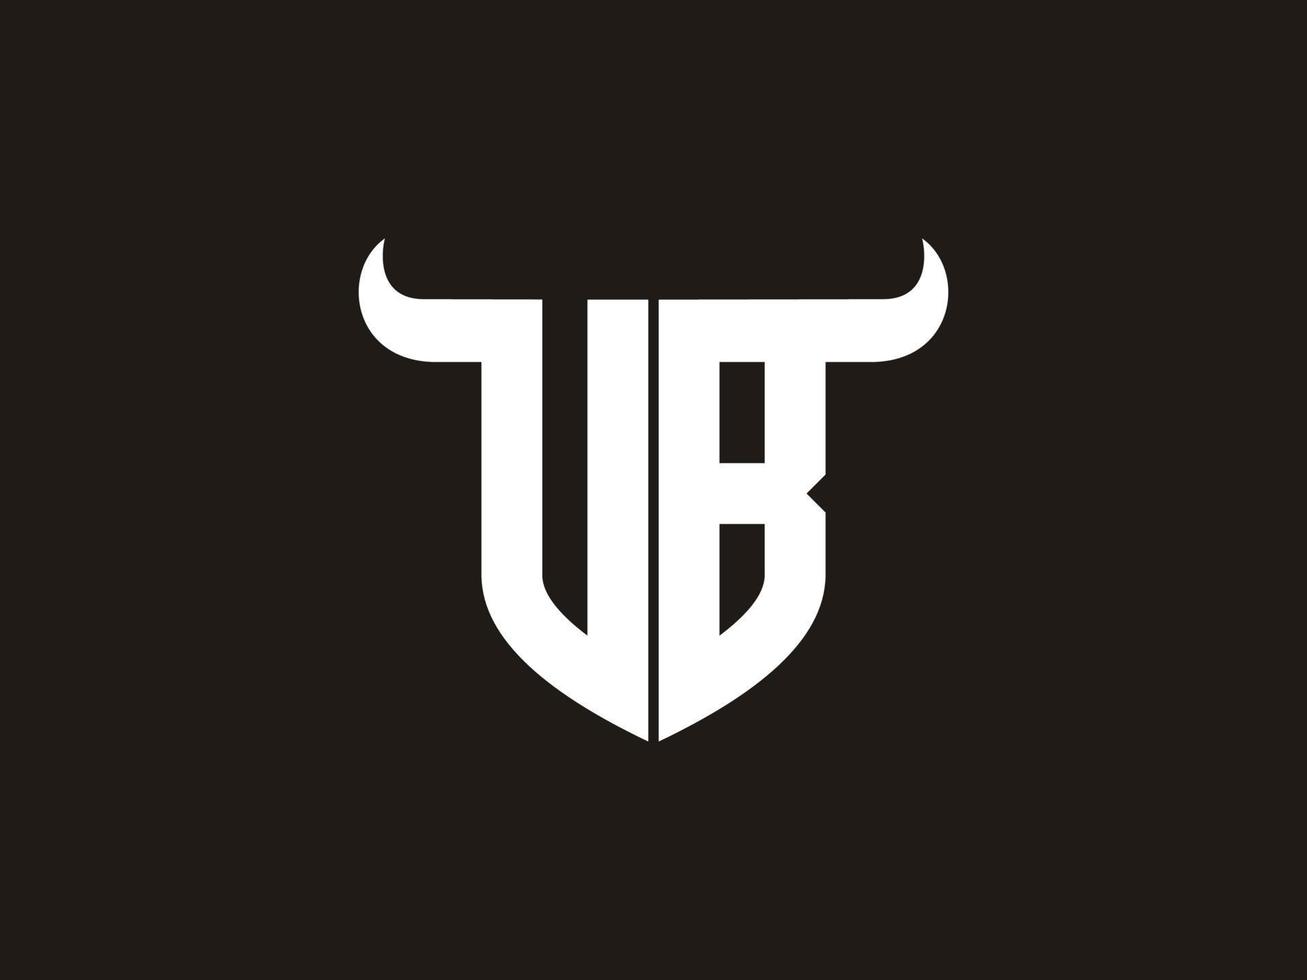 création initiale du logo vb bull. vecteur